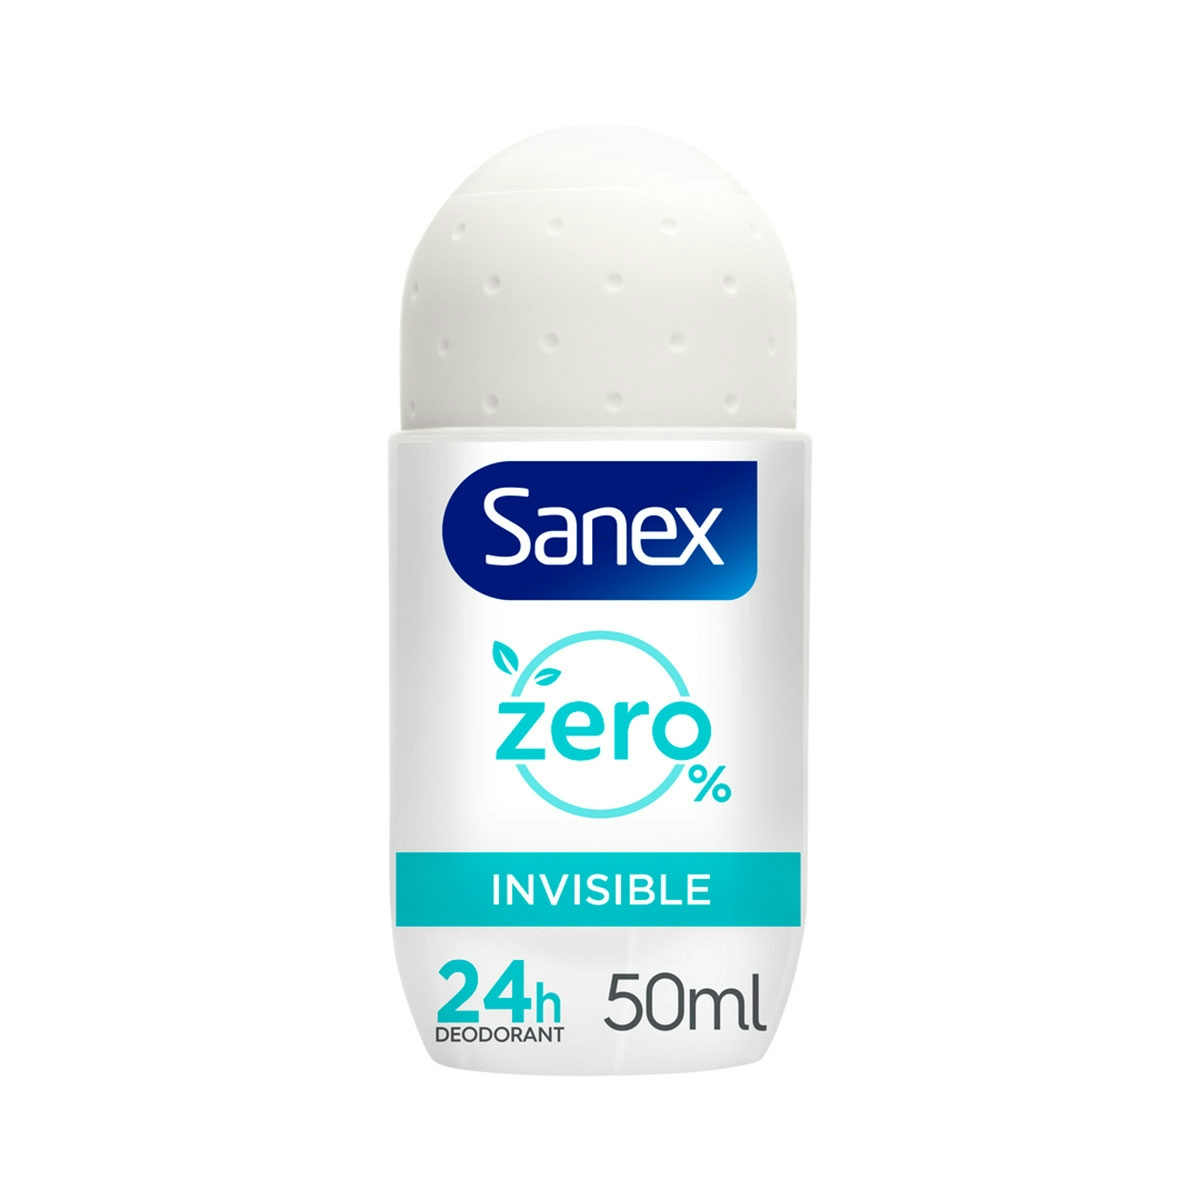 Desodorante roll-on Sanex Zero% Invisible protección 24h 50ml